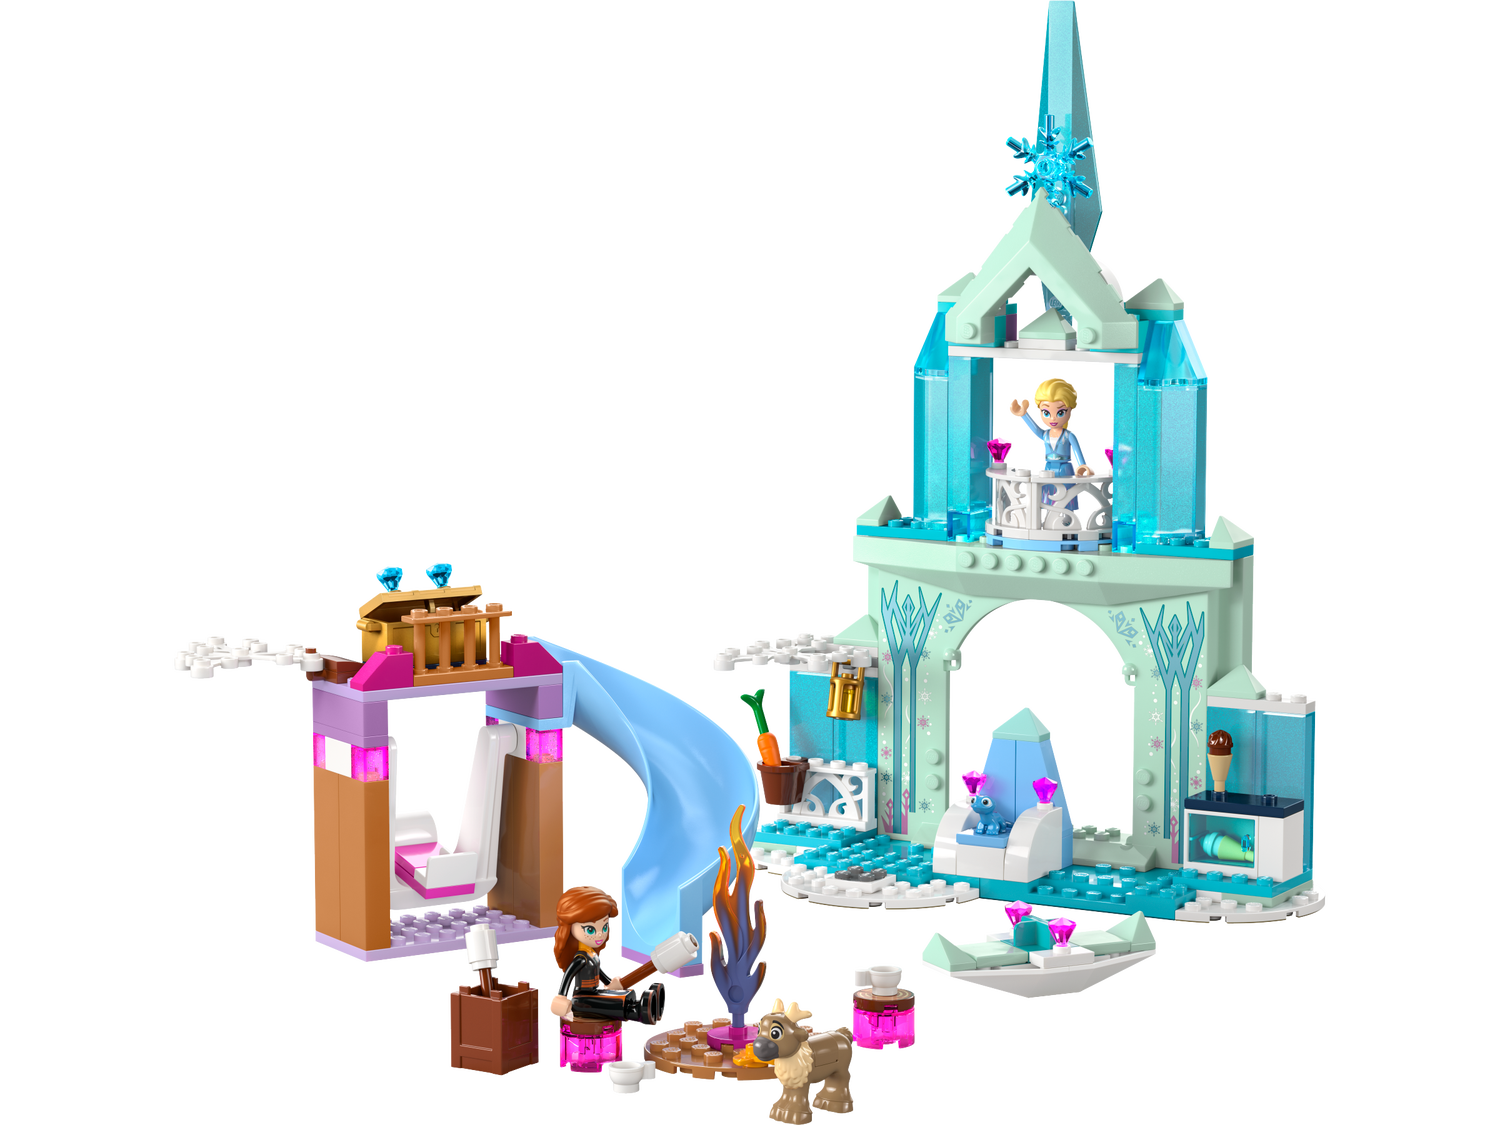 Il Castello di ghiaccio di Elsa